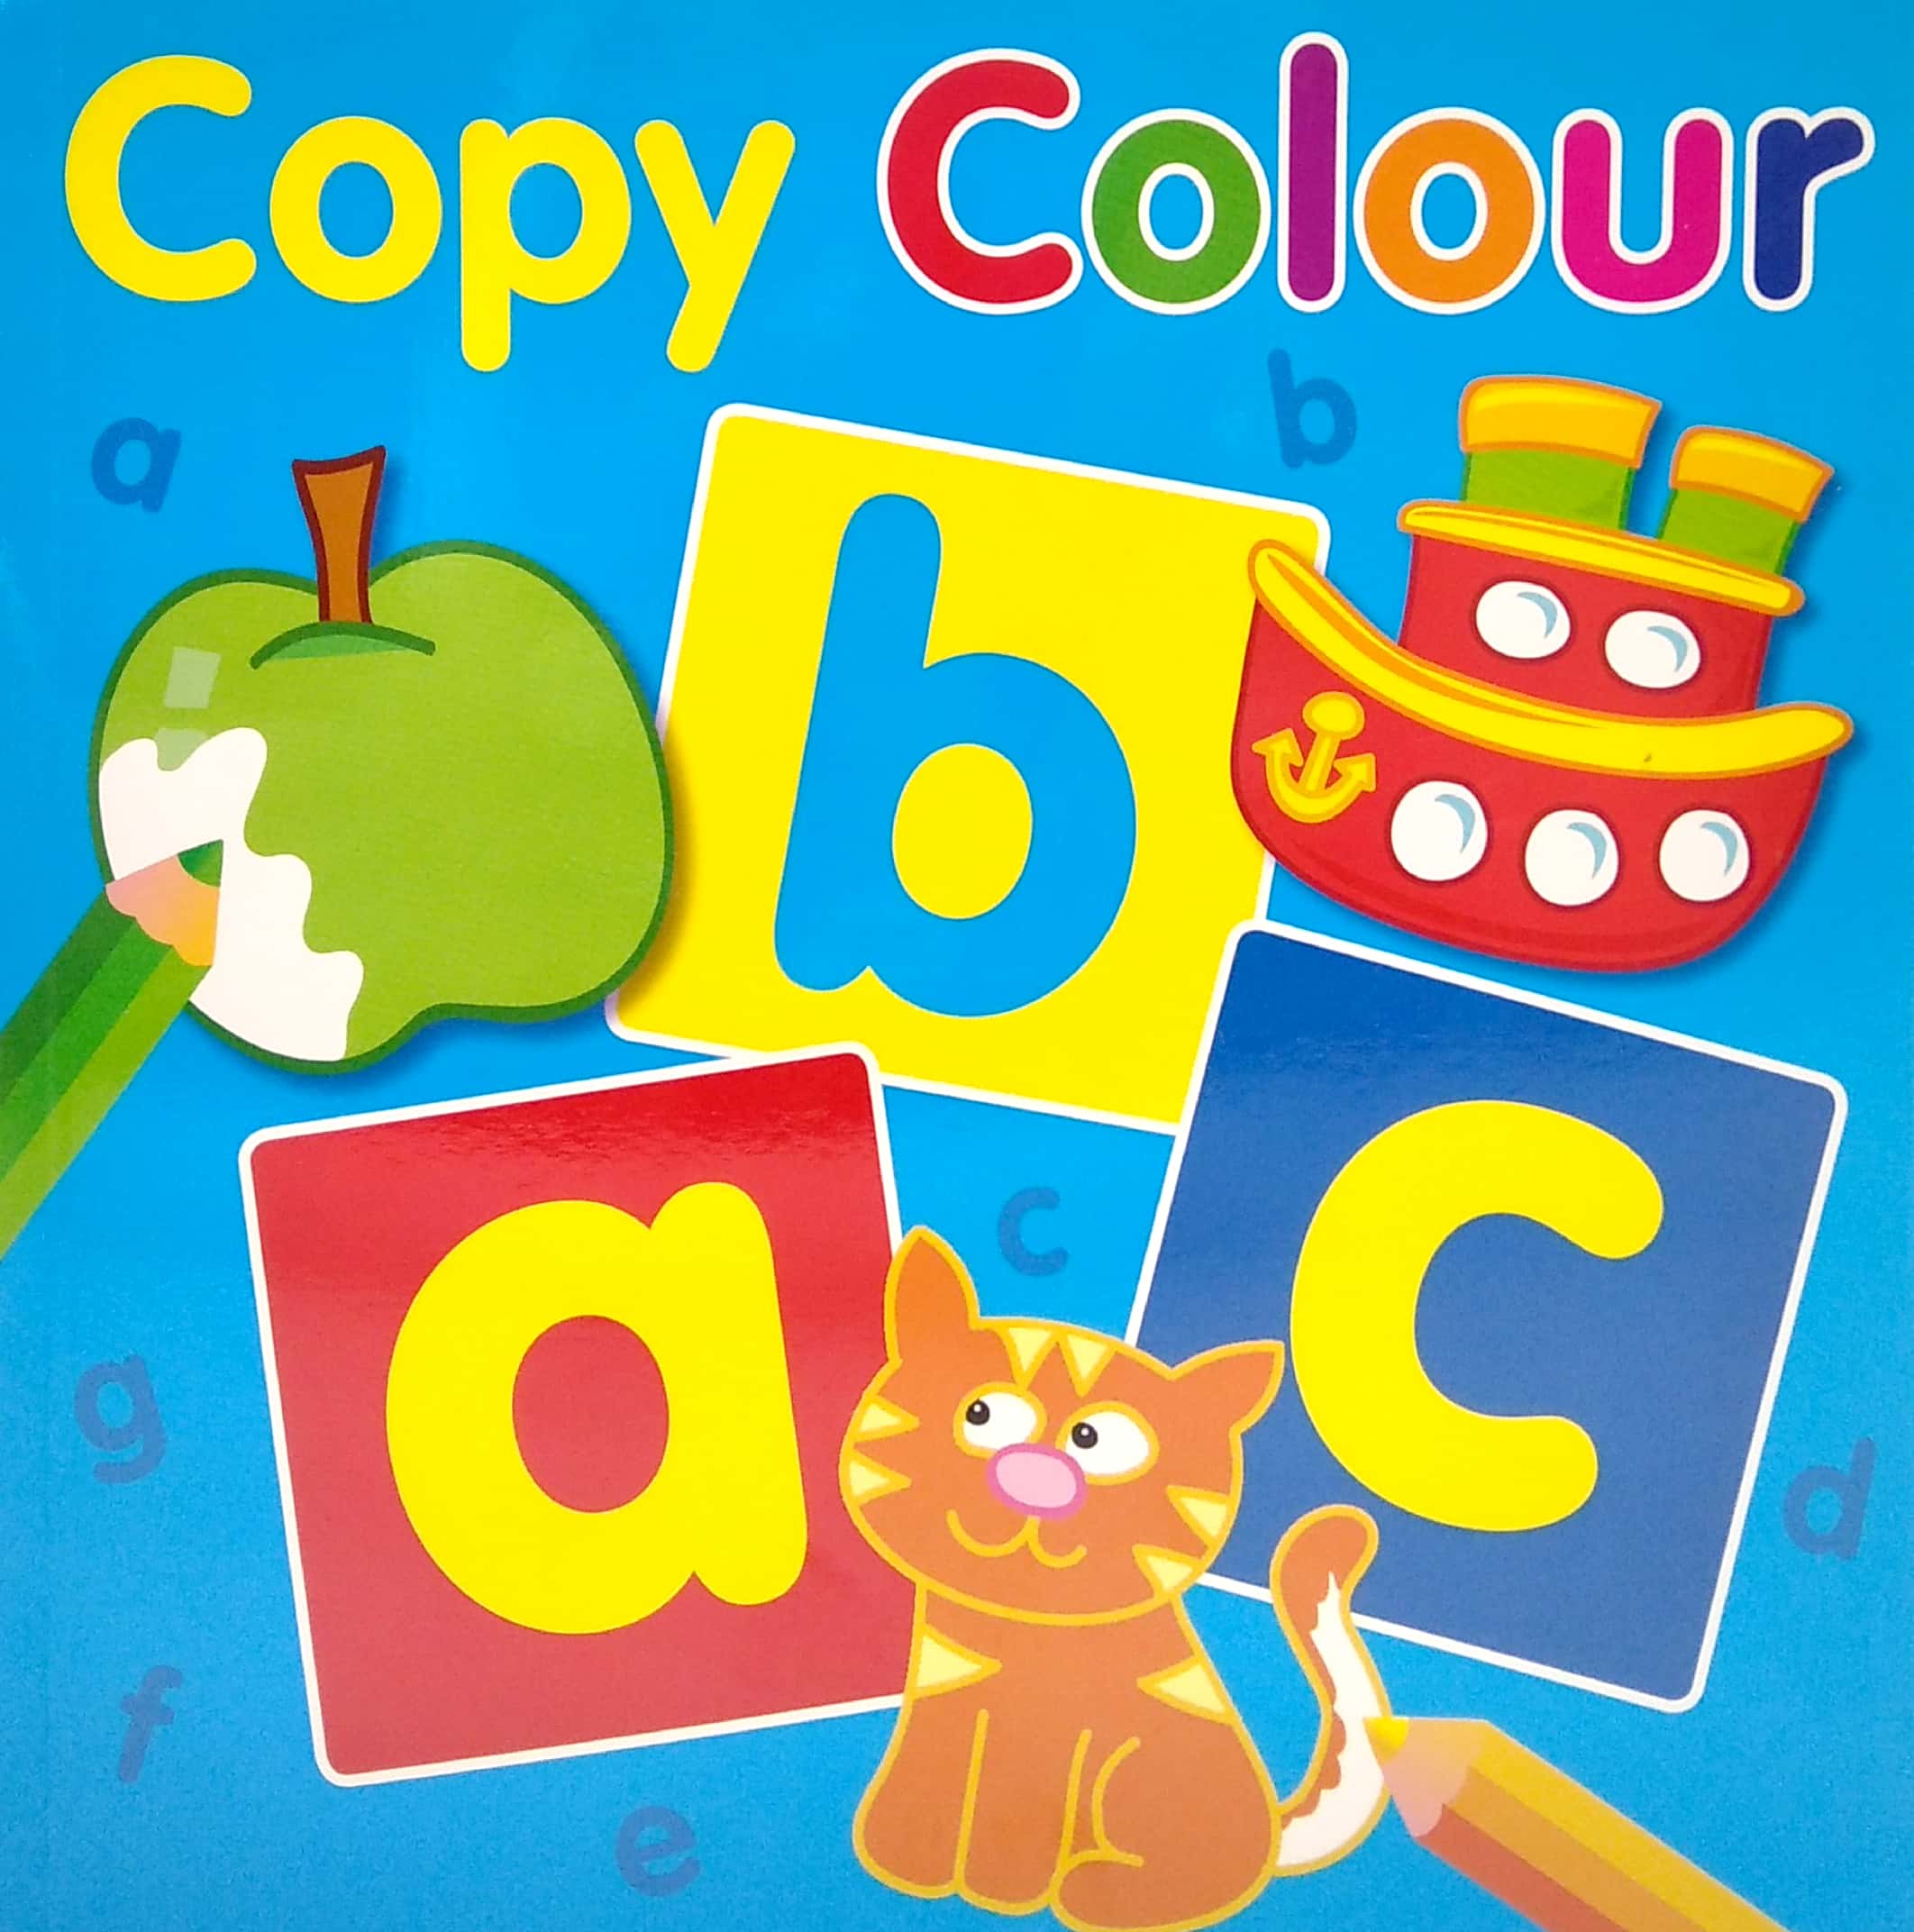 Copy Colour abc